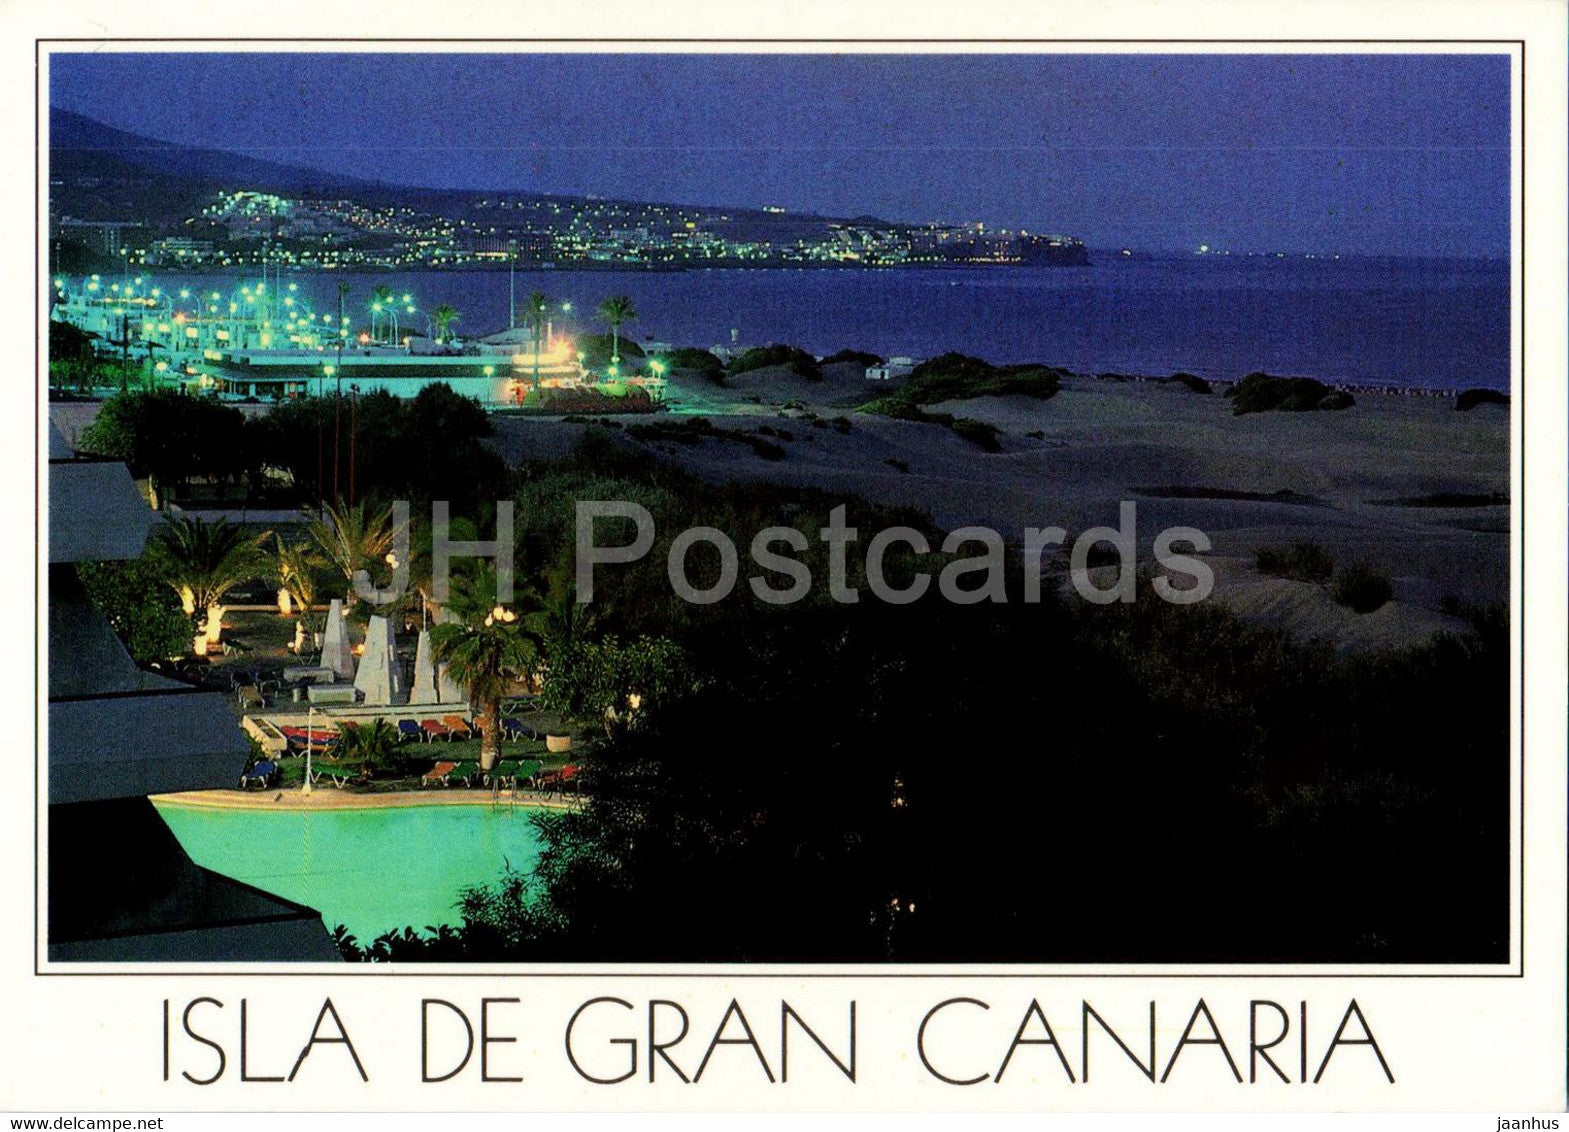 Gran Canaria - Playa del Ingles - 30 - Spain - unused - JH Postcards